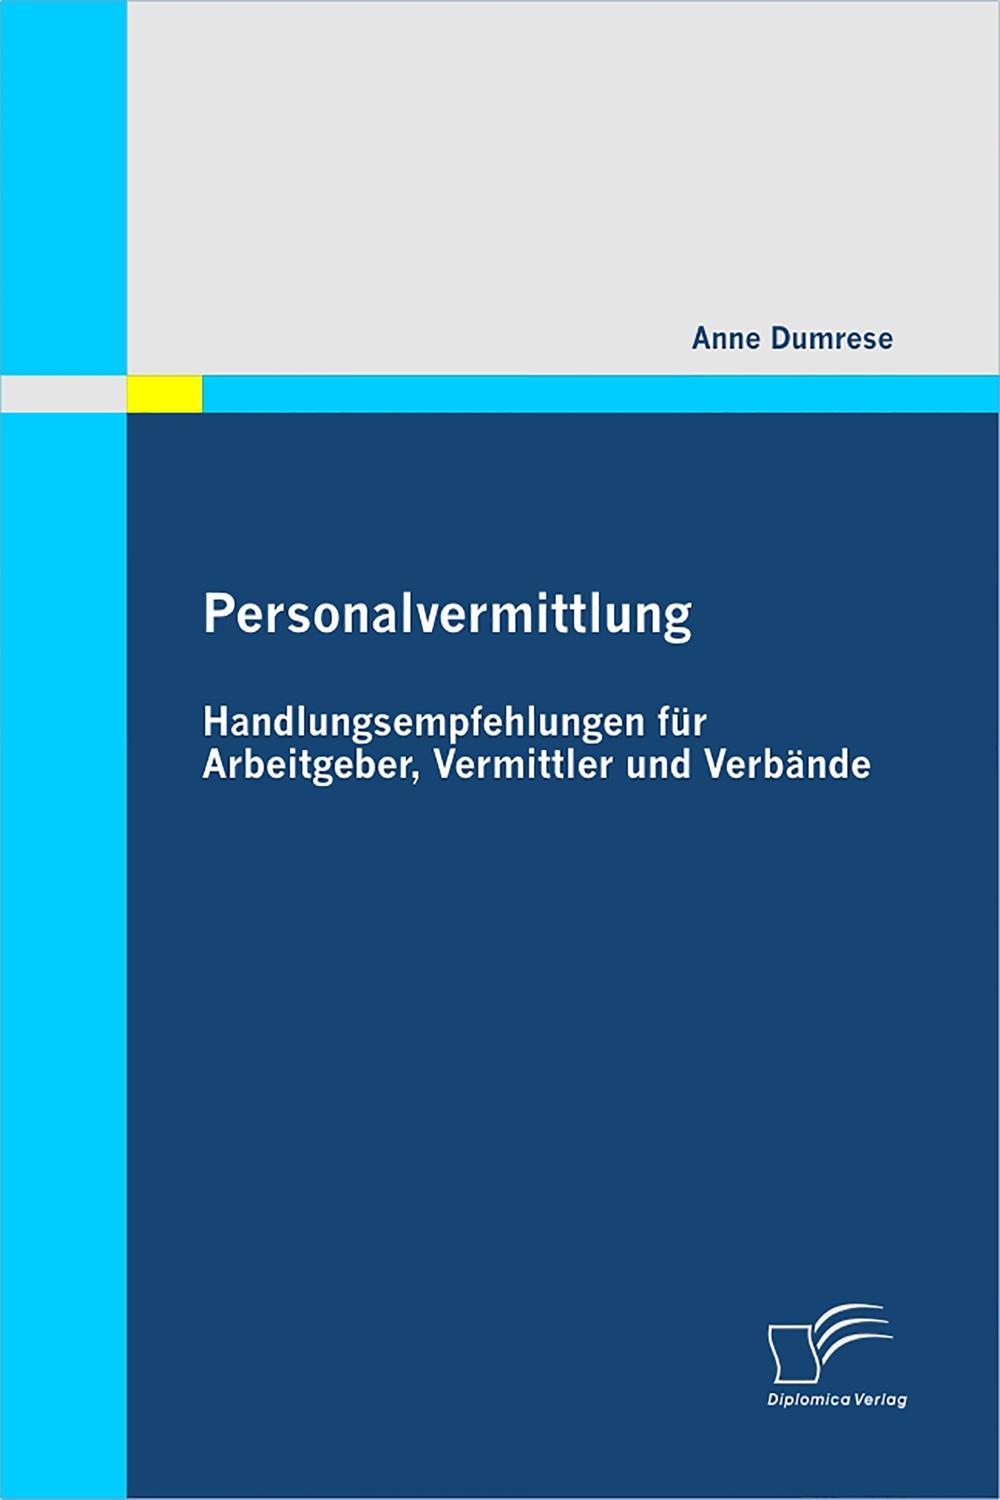 Personalvermittlung: Handlungsempfehlungen für Arbeitgeber, Vermittler und Verbände - Anne Dumrese